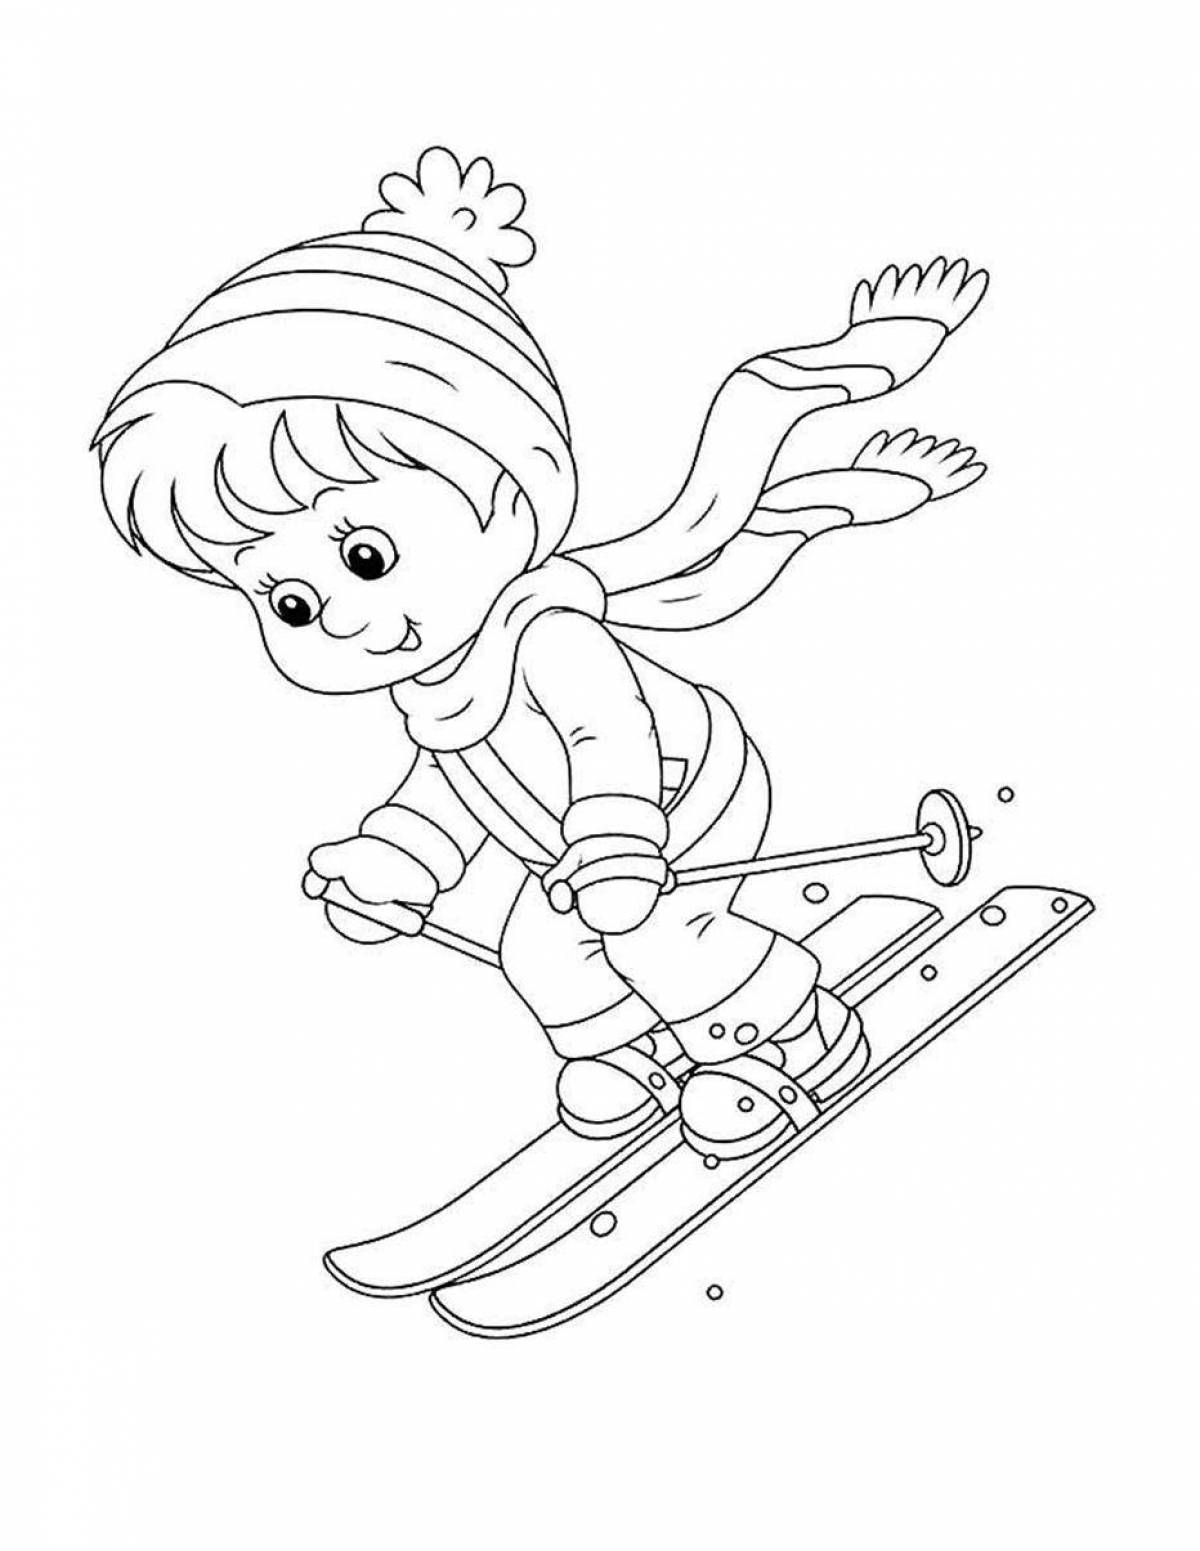 Энергичные дети катаются на лыжах зимой